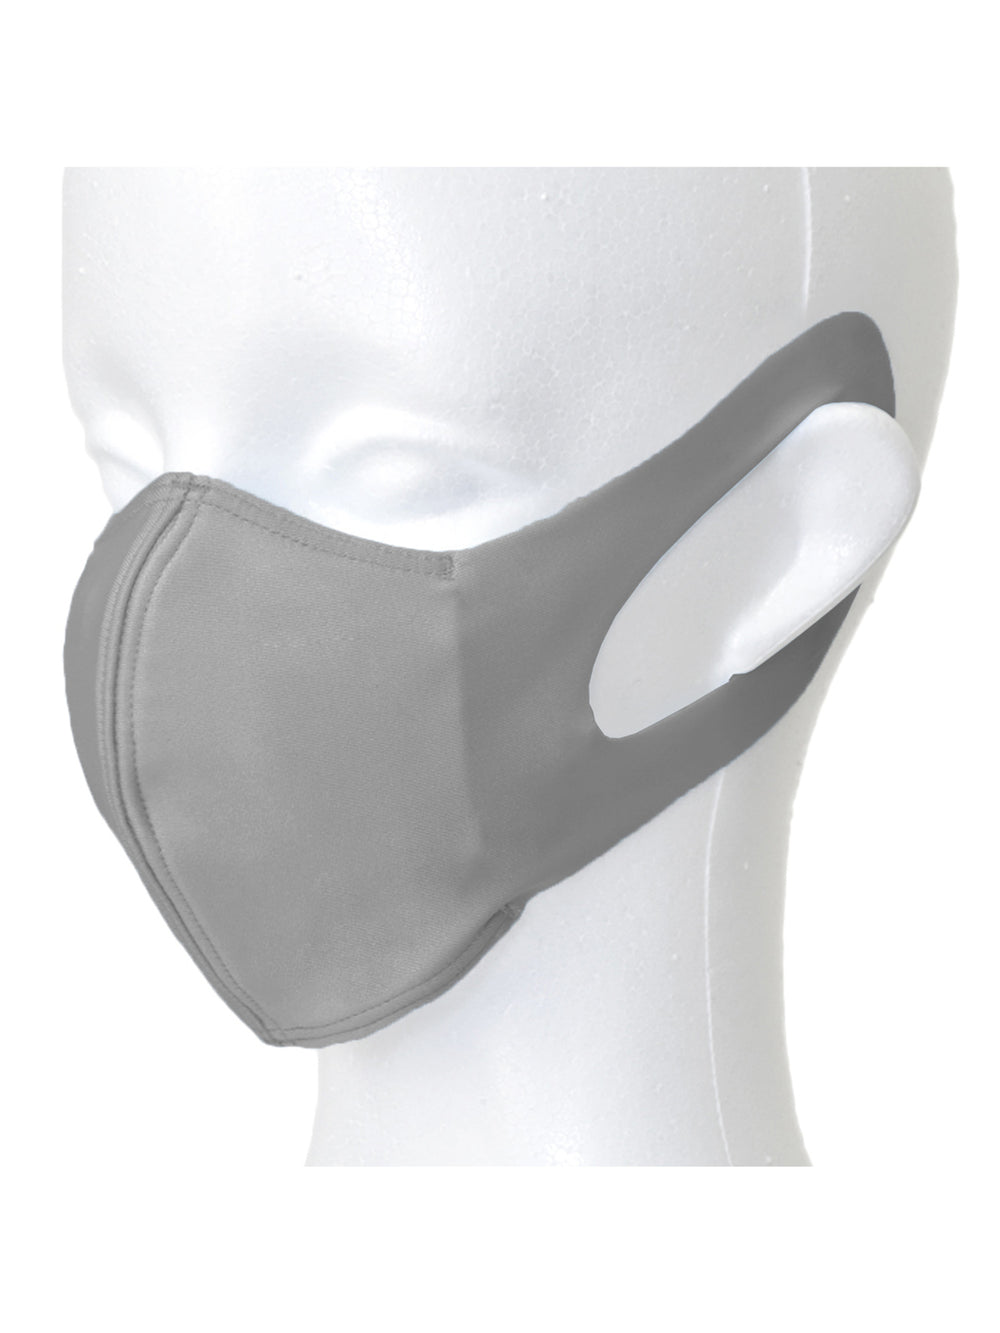 [マスクSALE][LOOPA MASK] ルーパ シルキーファイン マスク Silky Fine Sports Mask / スポーツマスク 抗菌・防臭加工 洗える 日本製 水着素材 UV [A] - Puravida!プラヴィダ ヨガウェア ヨガマット